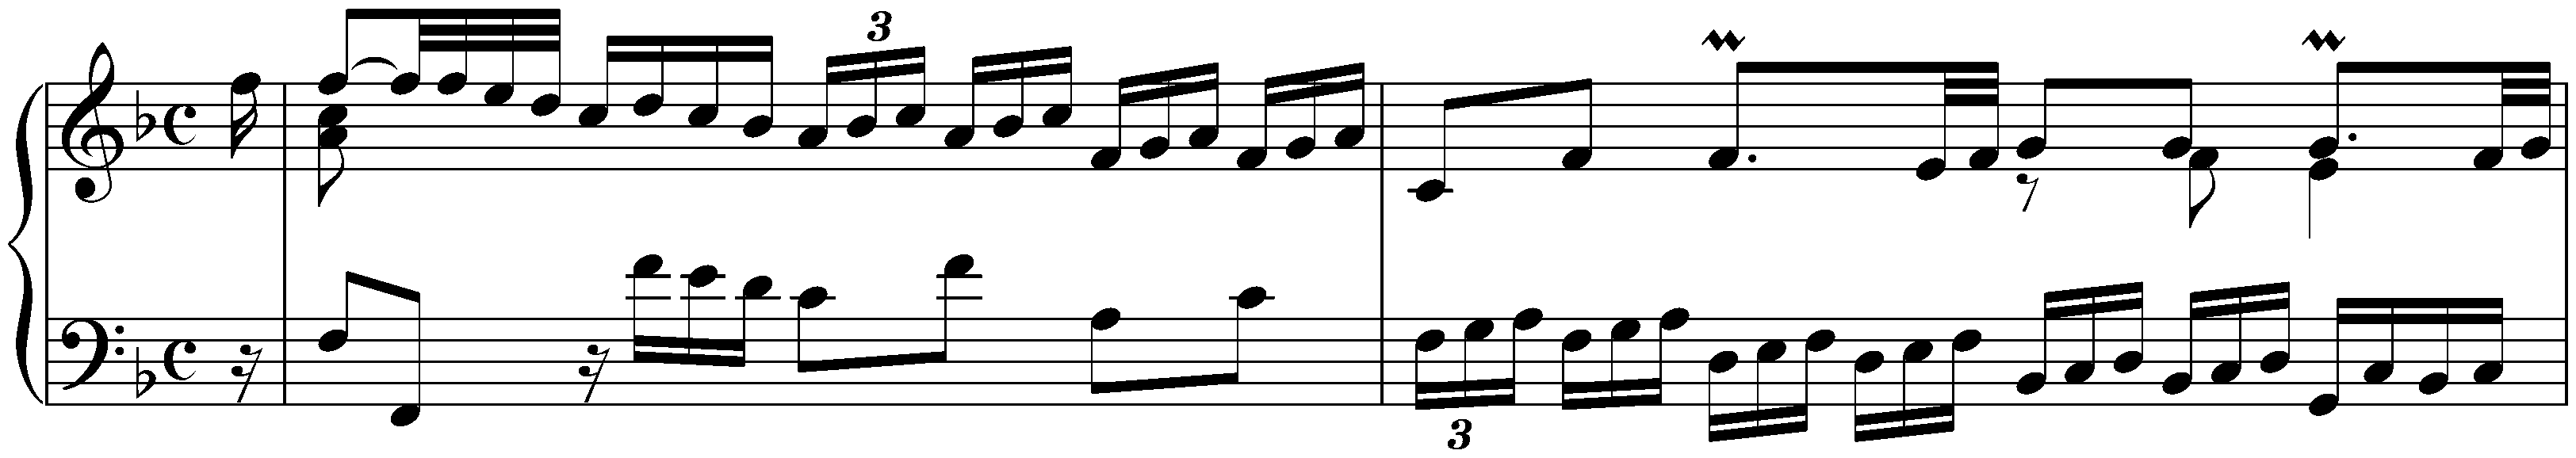 English Suite no. 4 in F major, BWV 809; 2. Allemande